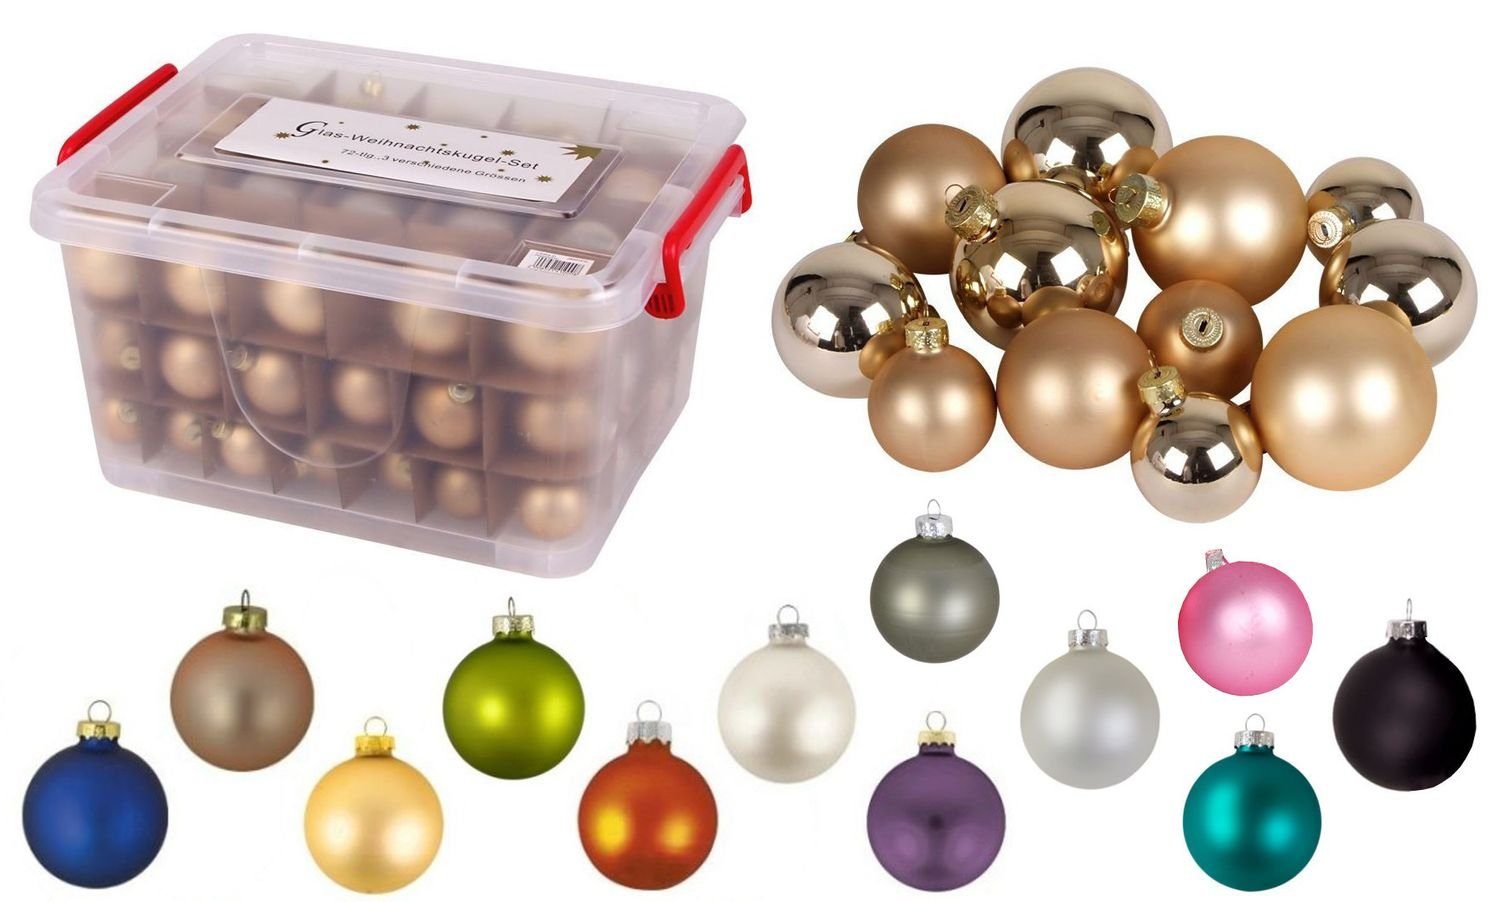 72tlg Glas-Weihnachtskugel-Set silber Deko BURI Weihnachtsbaumkugel + Box Weihnachtsbaumkugeln